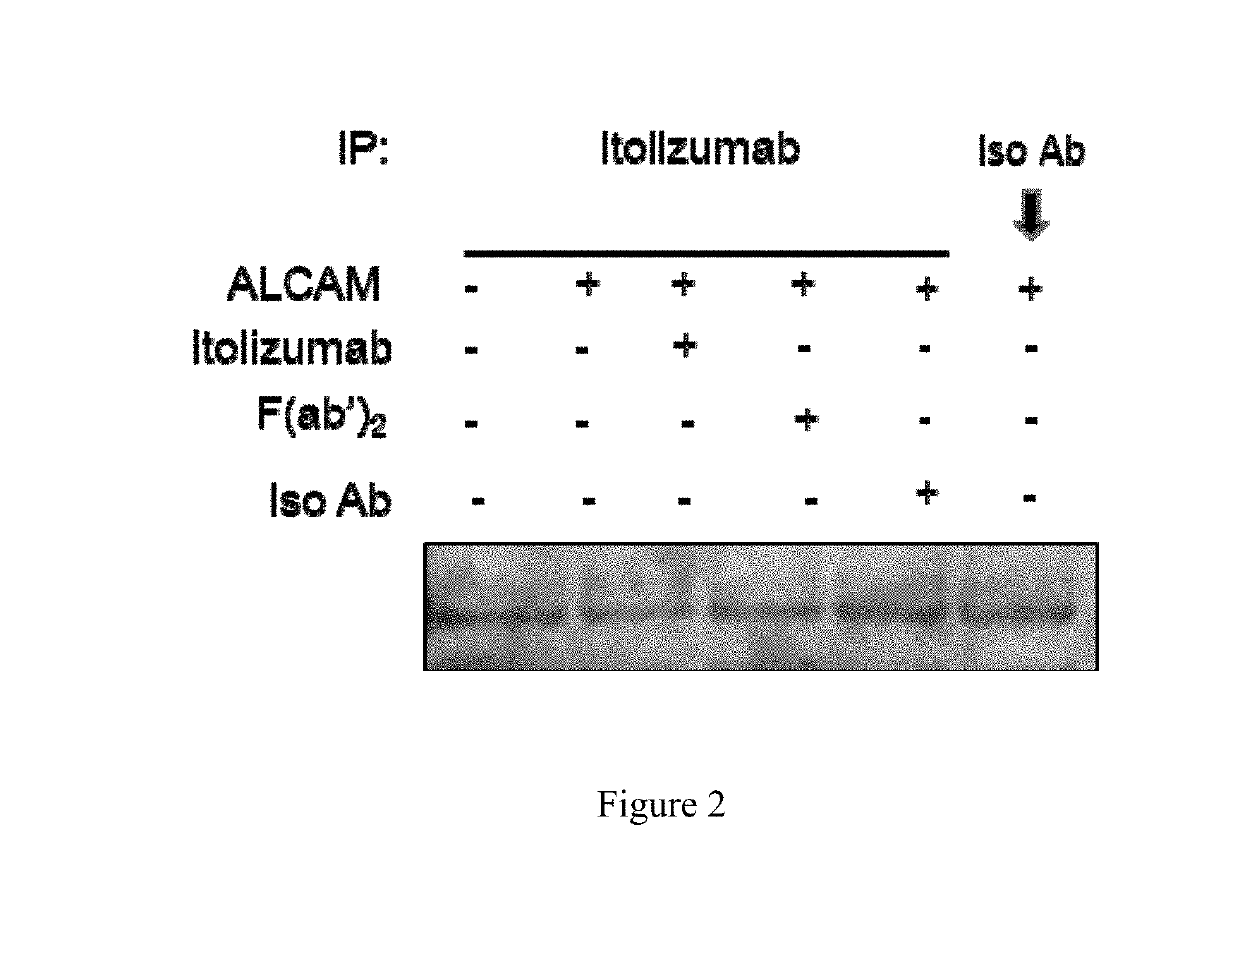 Use of itolizumab to reduce phosphorylation of cd6